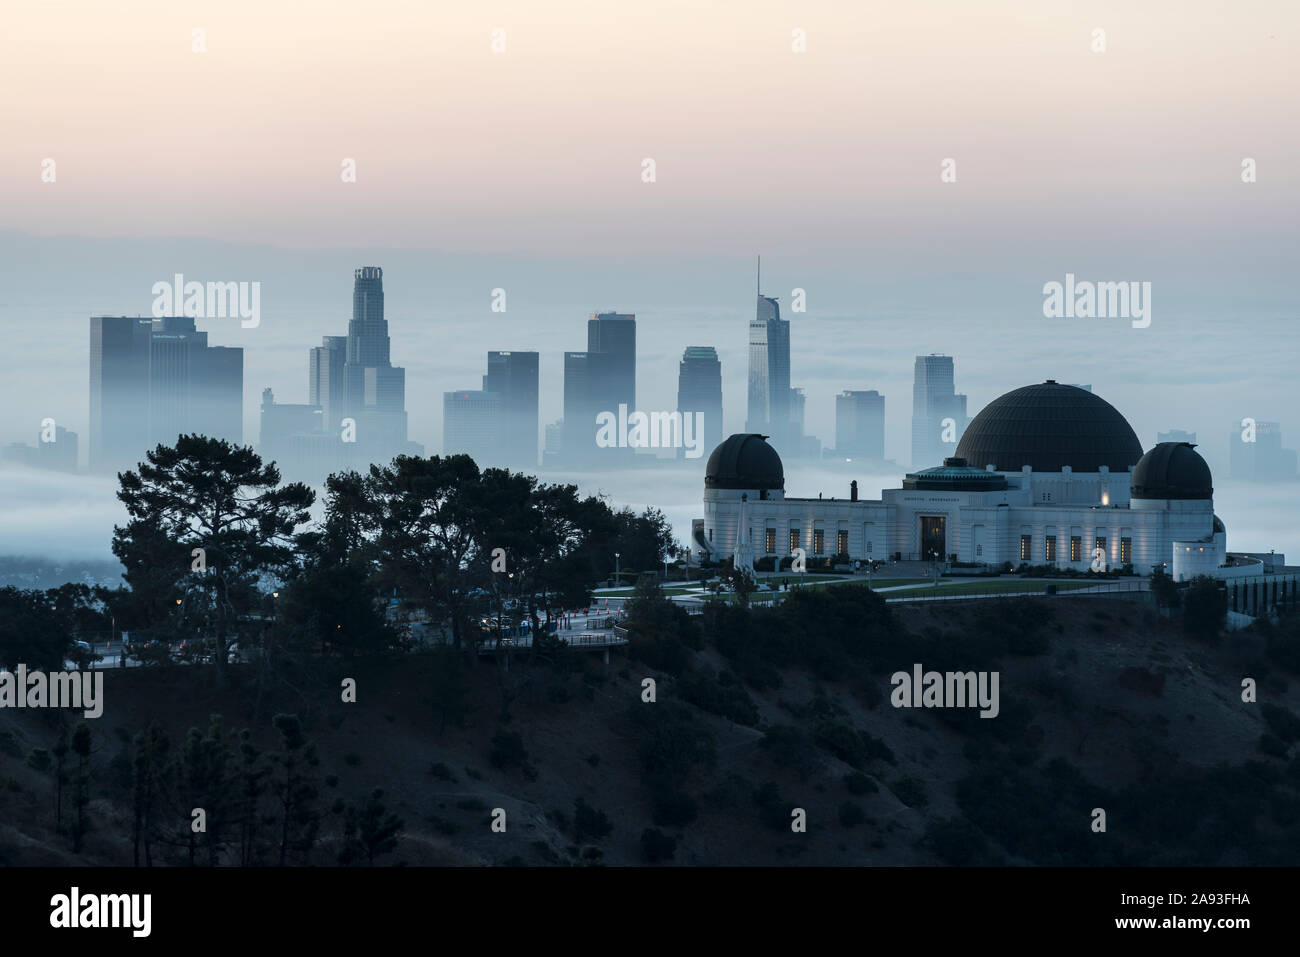 Los Angeles, California, Stati Uniti d'America - 10 Novembre 2019: nebbiosa mattina presto vista del centro cittadino di Los Angeles e il Parco Osservatorio Griffith. Foto Stock